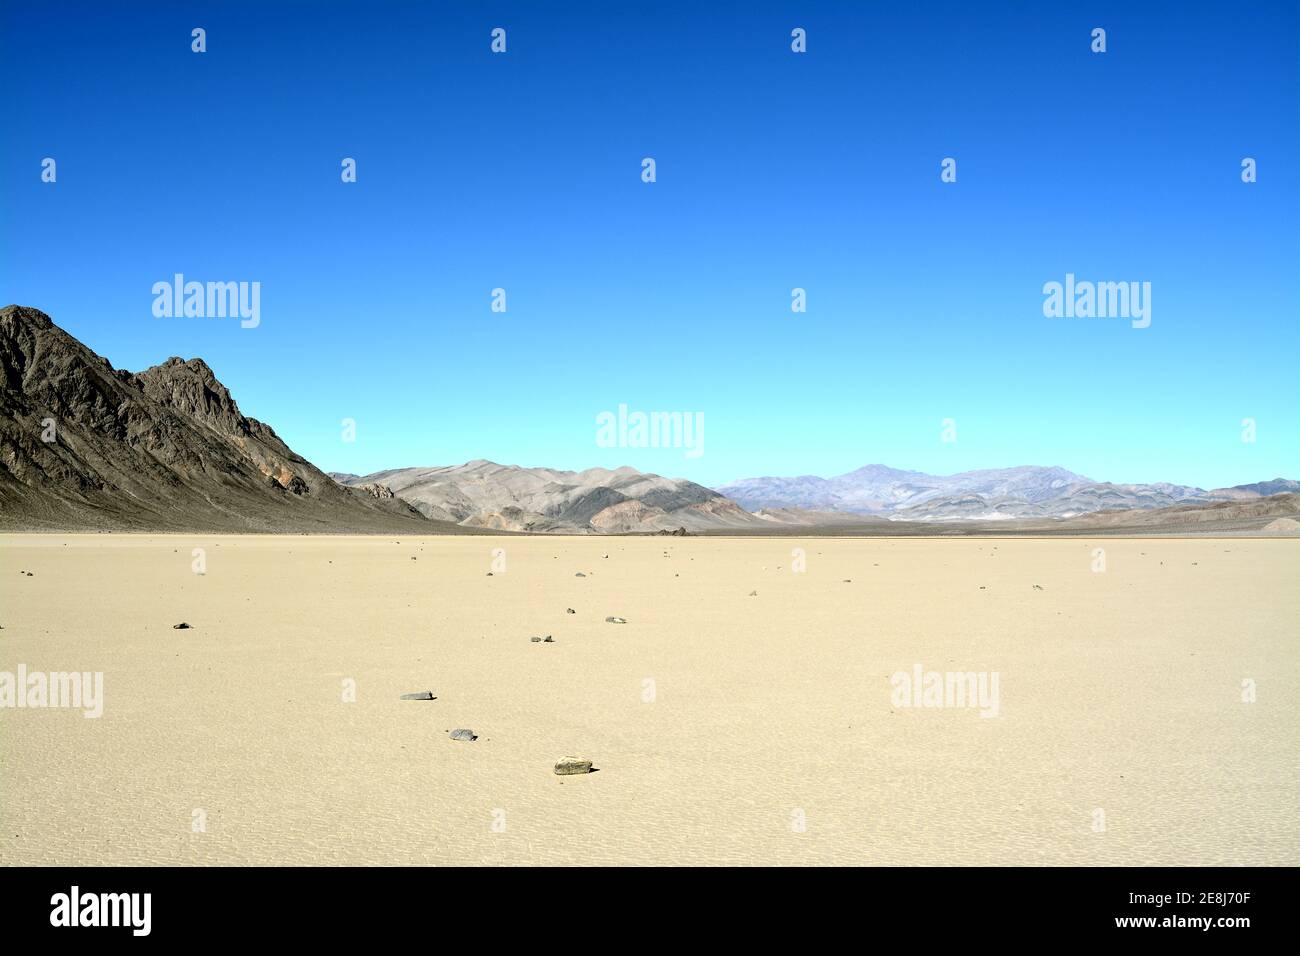 Segelfelsen verlassen einen langen Weg in der Wüste von Die Rennstrecke Playa markiert den Weg von einem der Geheimnisvolle bewegte Felsen im Death Valley Nation Stockfoto